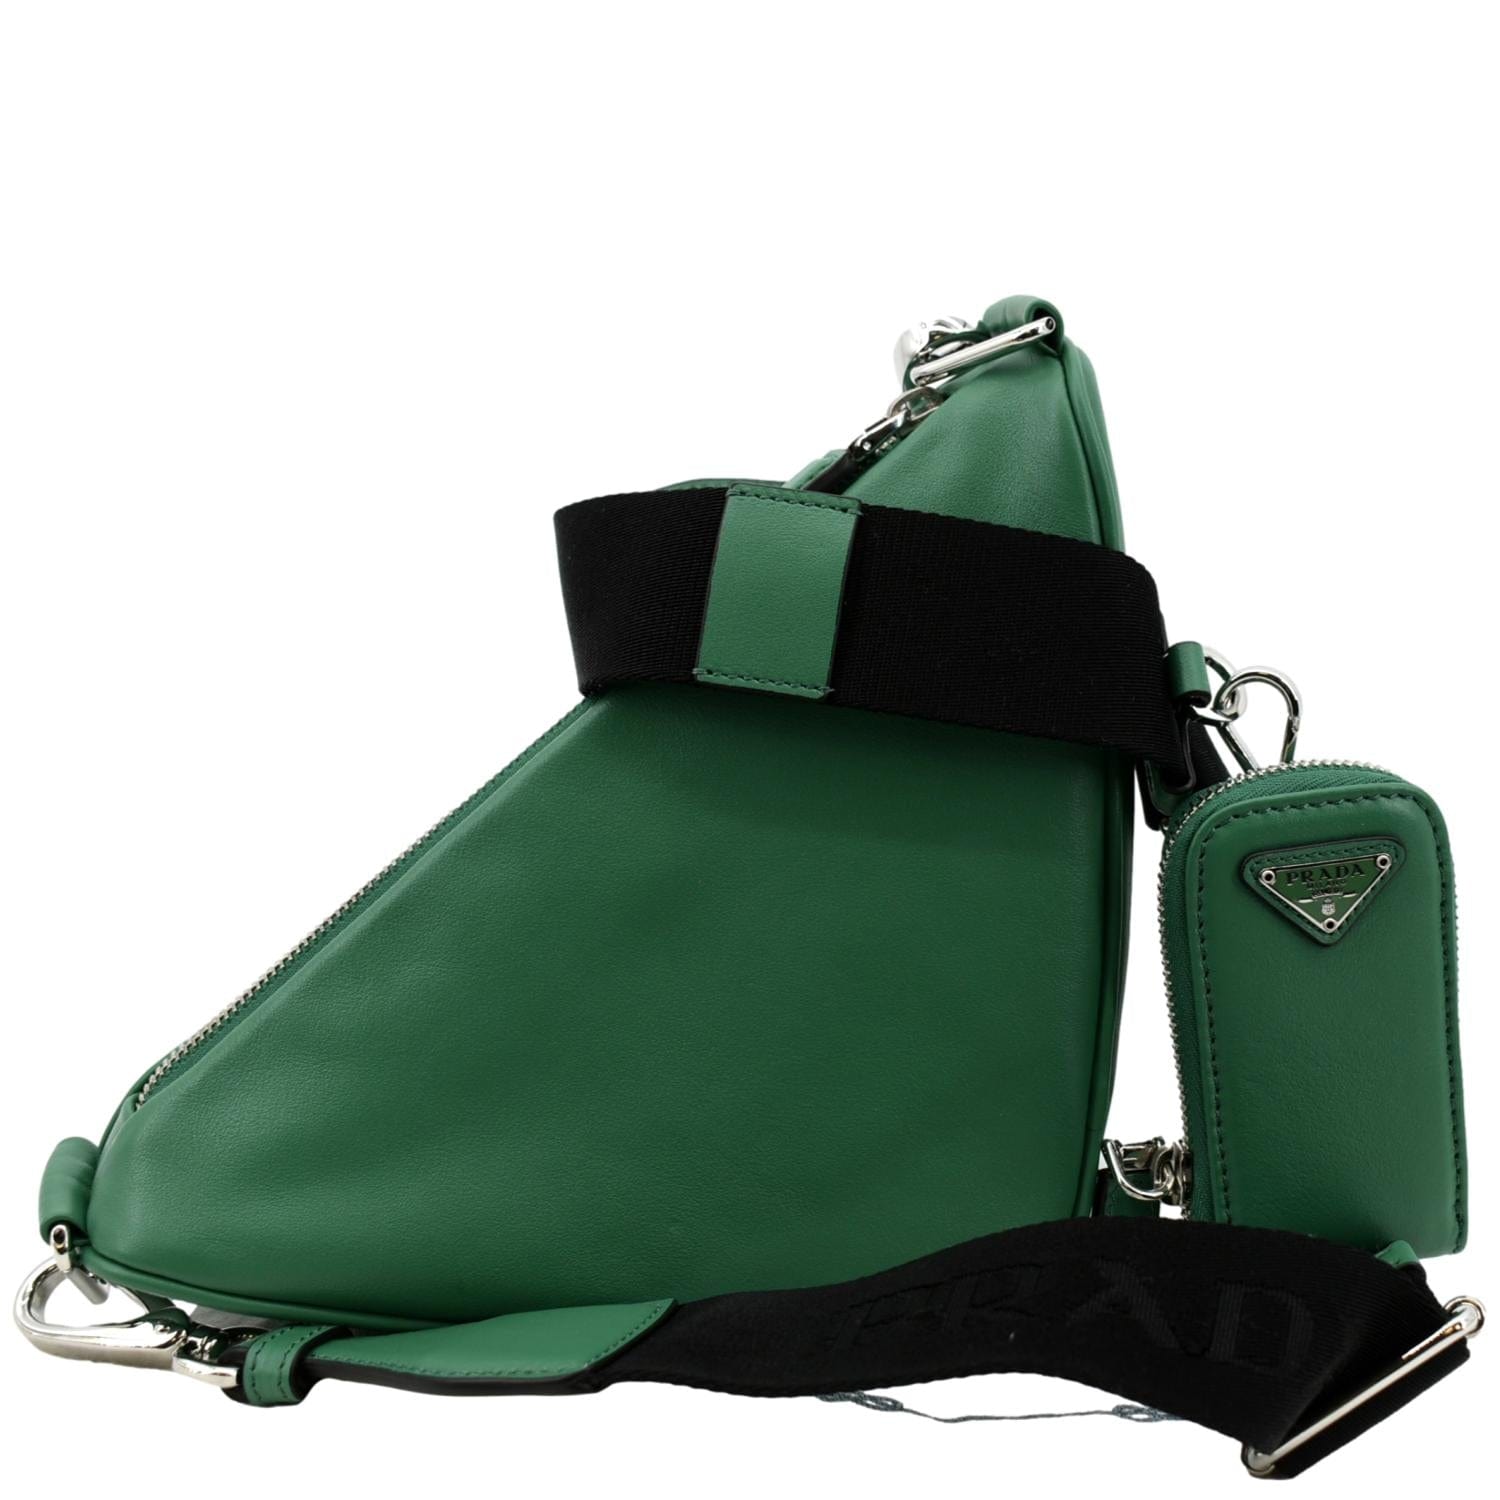 Prada Men's Saffiano Leather Triangle Logo Crossbody Bag